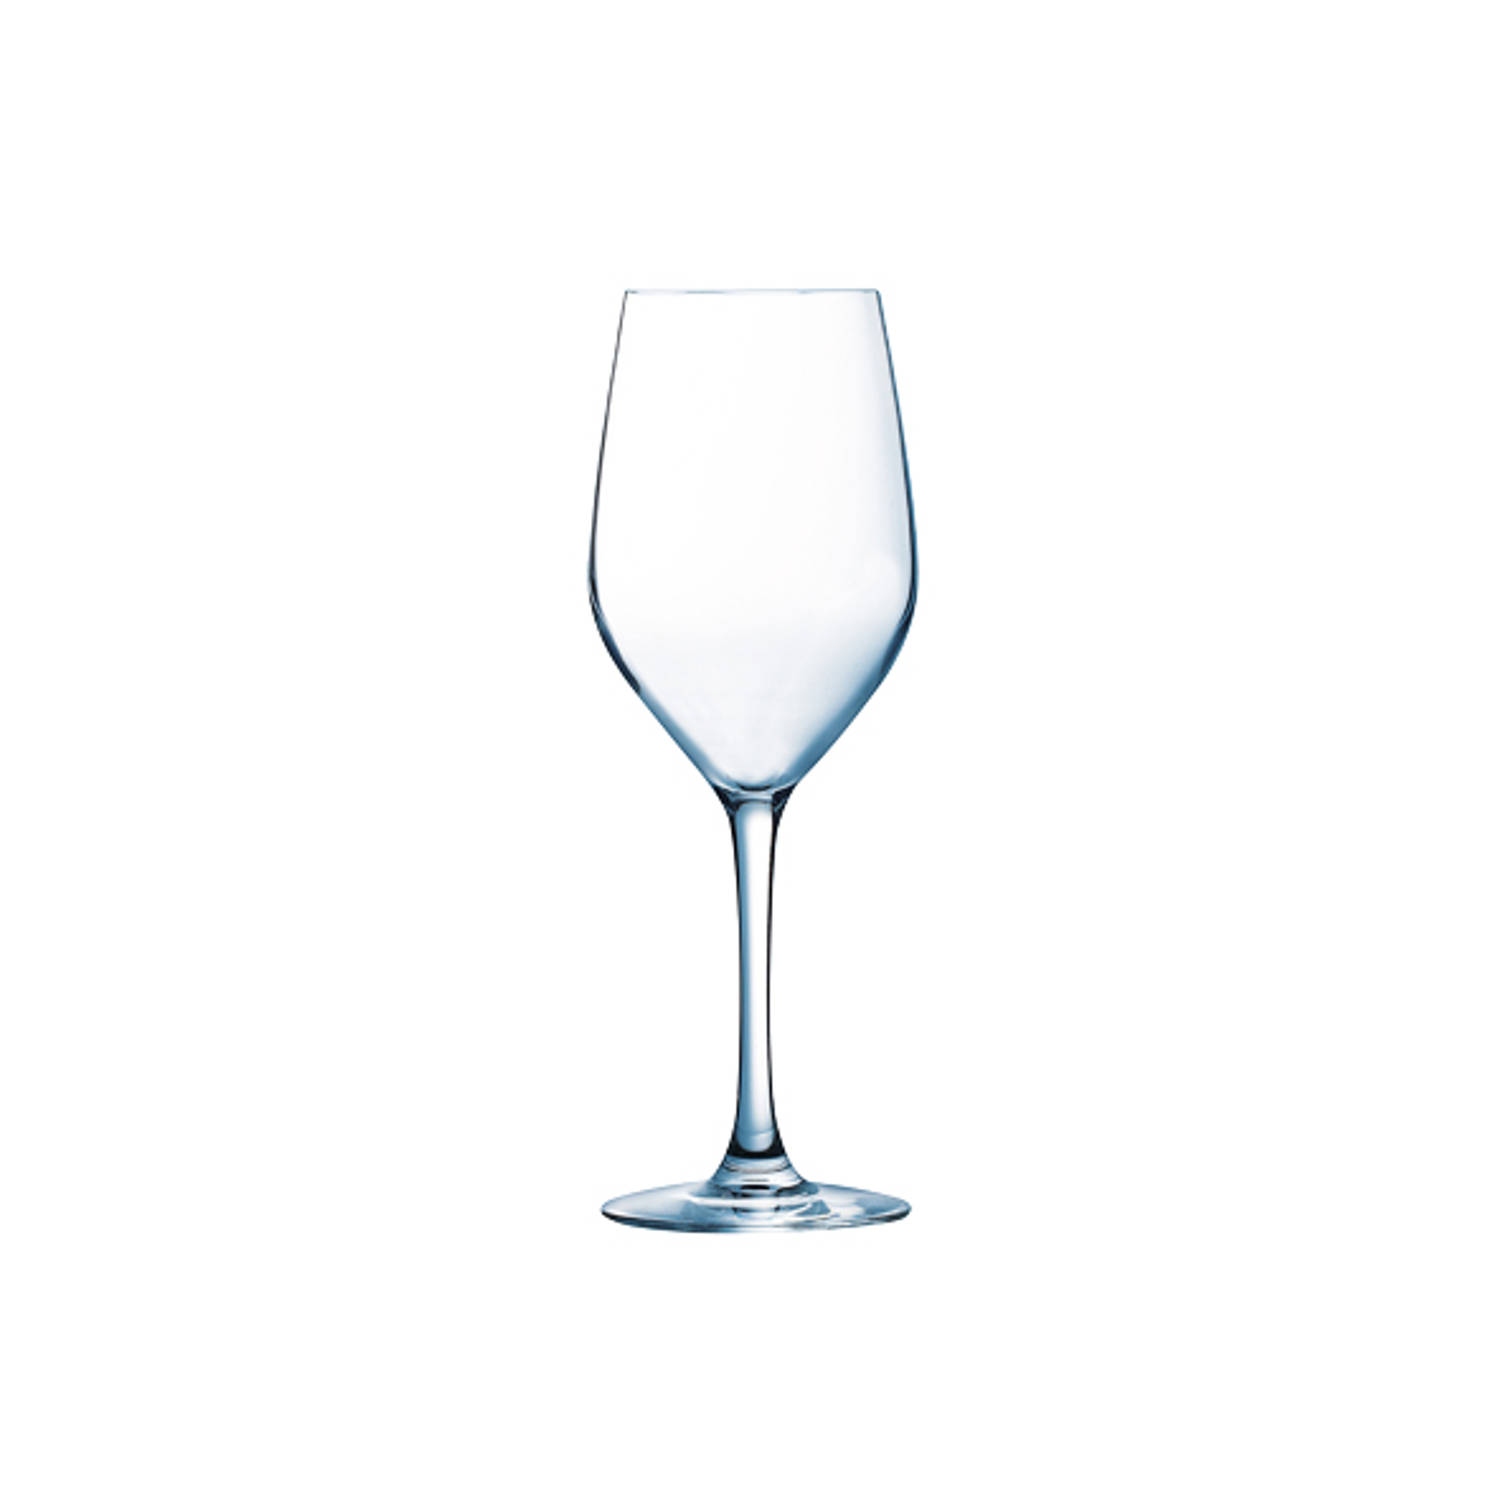 Arcoroc Mineral Wijnglas 35CL - 6 stuks - Sterk Glas - Rode en Witte Wijn